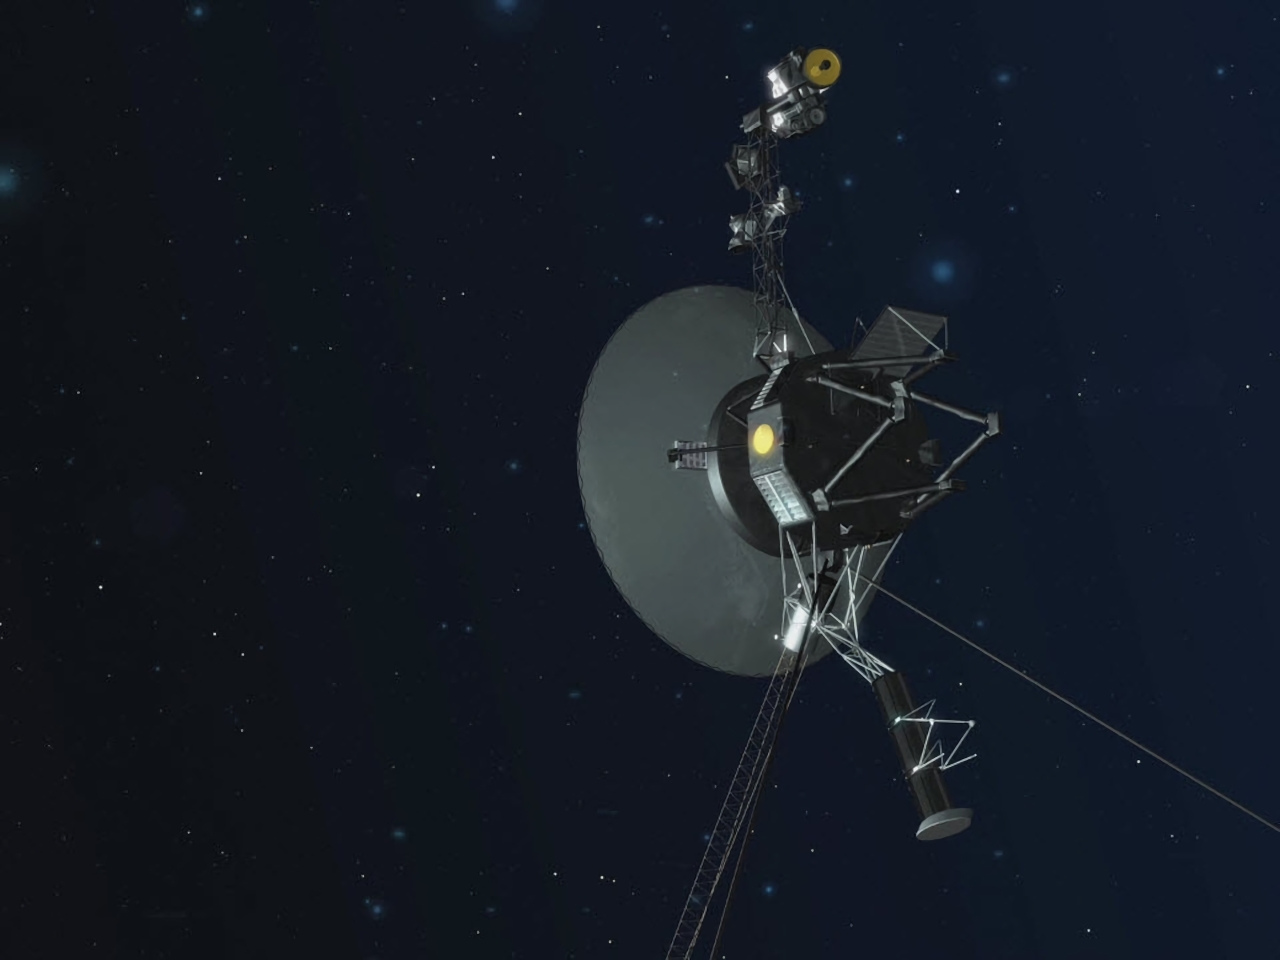 「Voyager 2」との途絶えていた通信が回復「なんとか家に電話できて良かった」